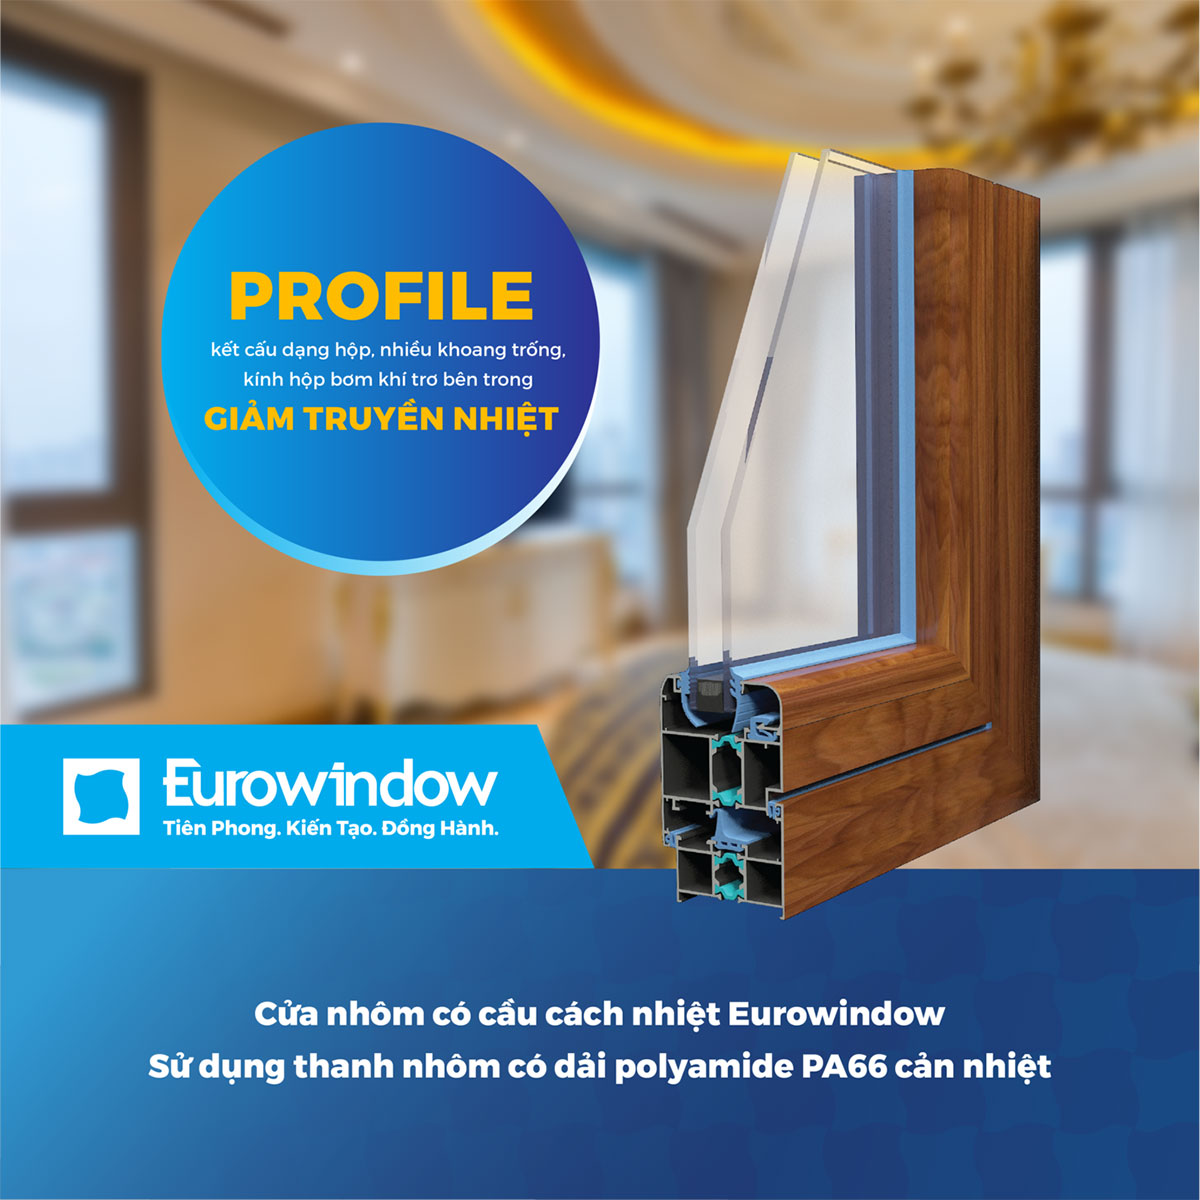 Cửa nhôm có cầu cách nhiệt Eurowindow - Sự lựa chọn lý tưởng cho các công trình nhà riêng, biệt thự cao cấp